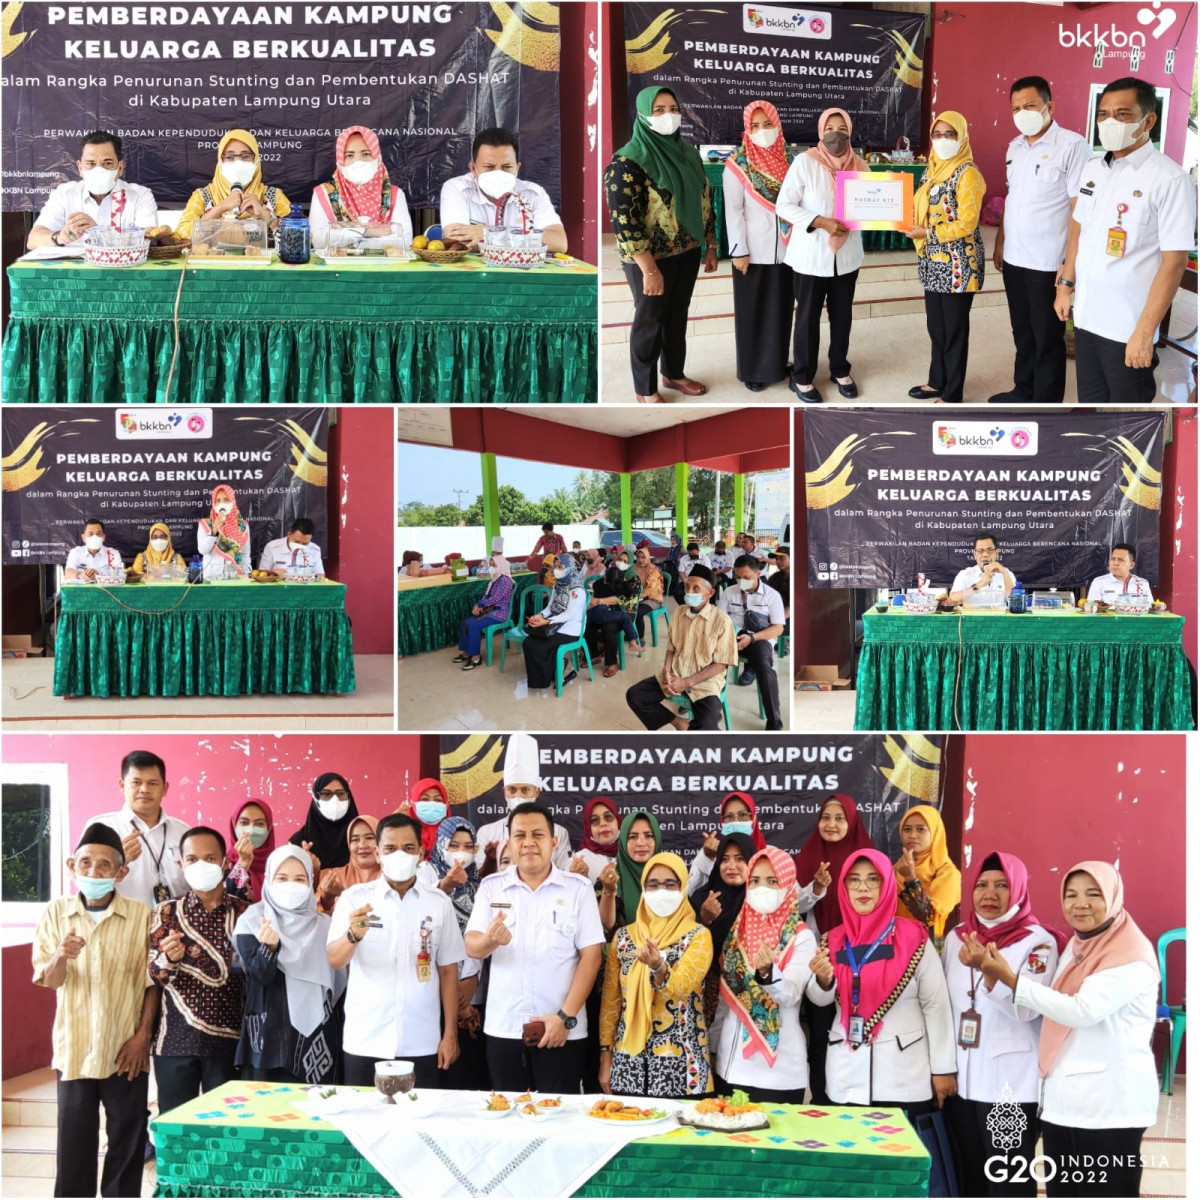 Kegiatan Pemberdayaan Kampung Keluarga Berkualitas Dalam Rangka Penurunan Stunting dan Pembentukan DAHSAT di Desa Buring Kencana, Kabupaten Lampung Utara